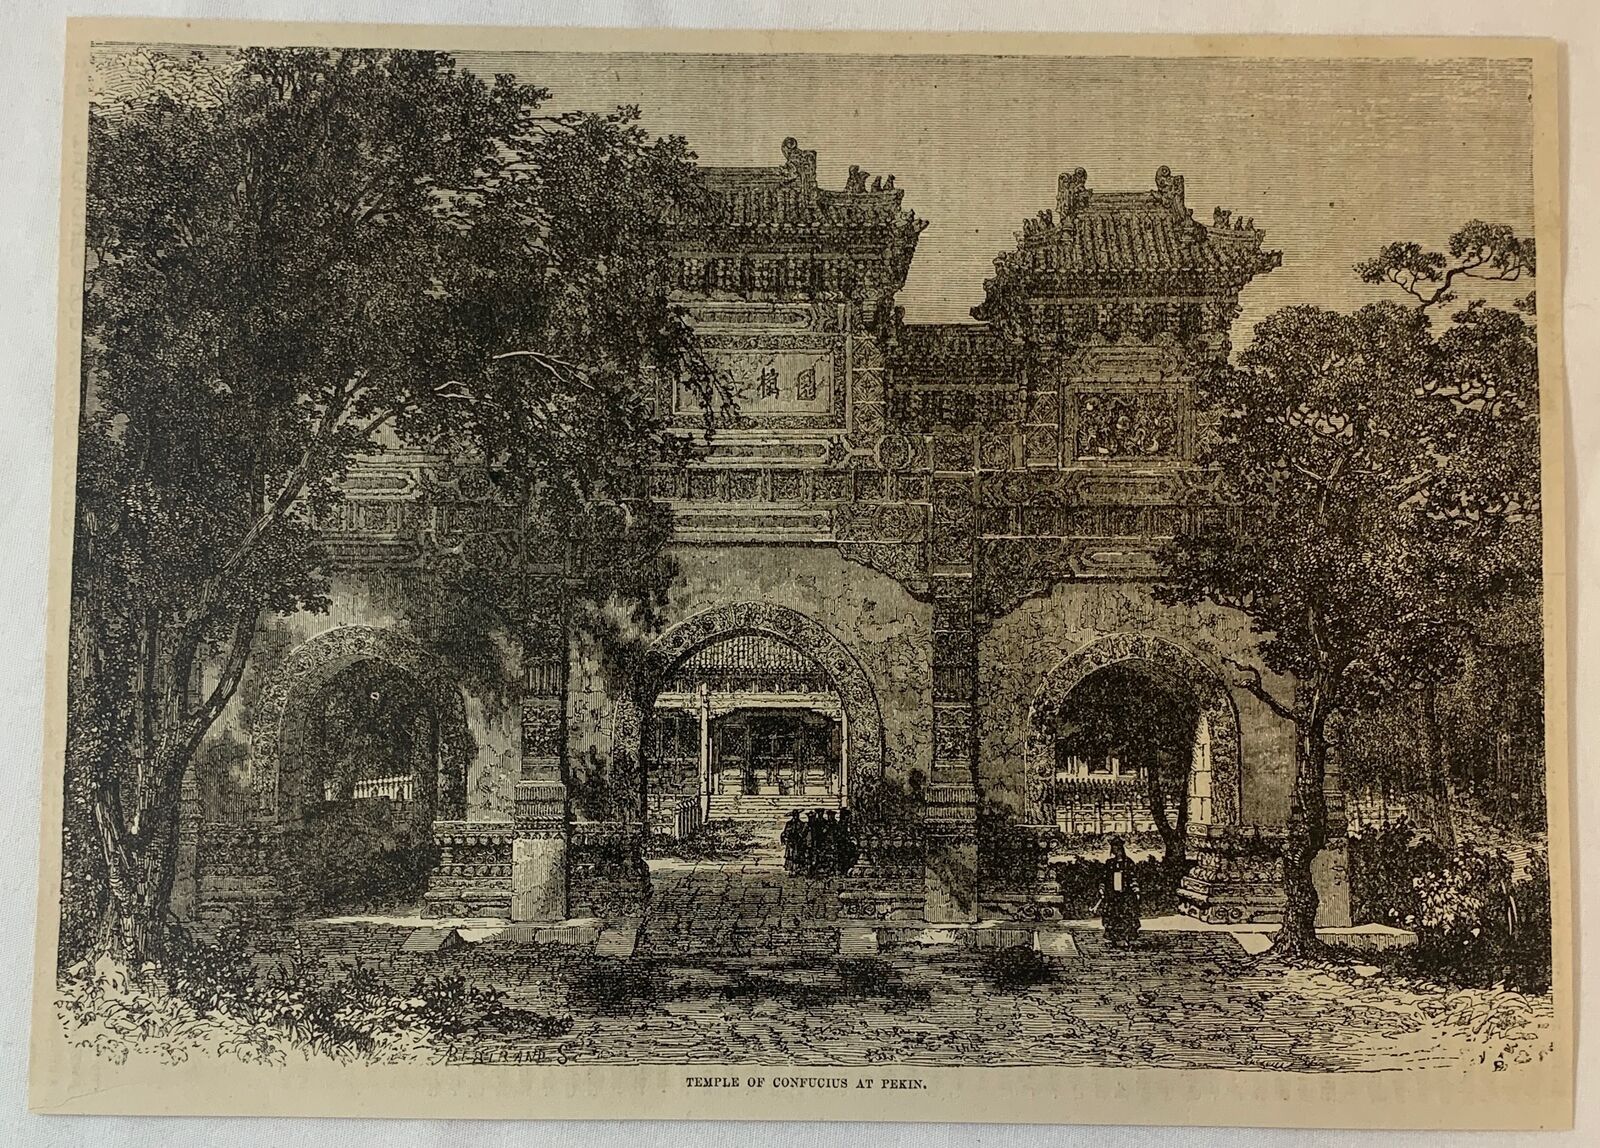 1877 magazine engraving ~ TEMPLE OF CONFUCIUS At Pekin